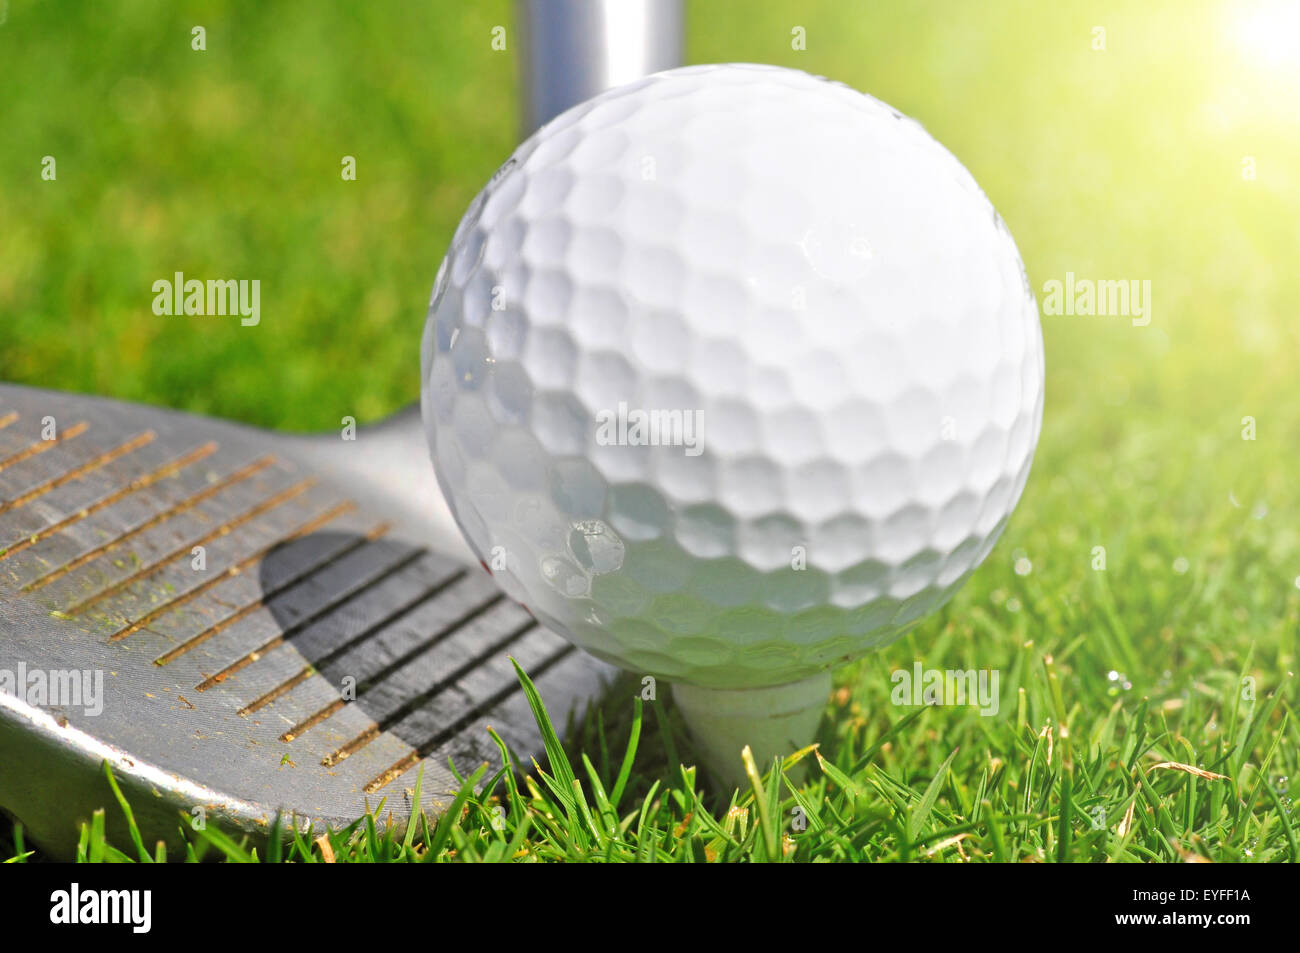 La pallina da golf e driver, pronti a colpire Foto Stock